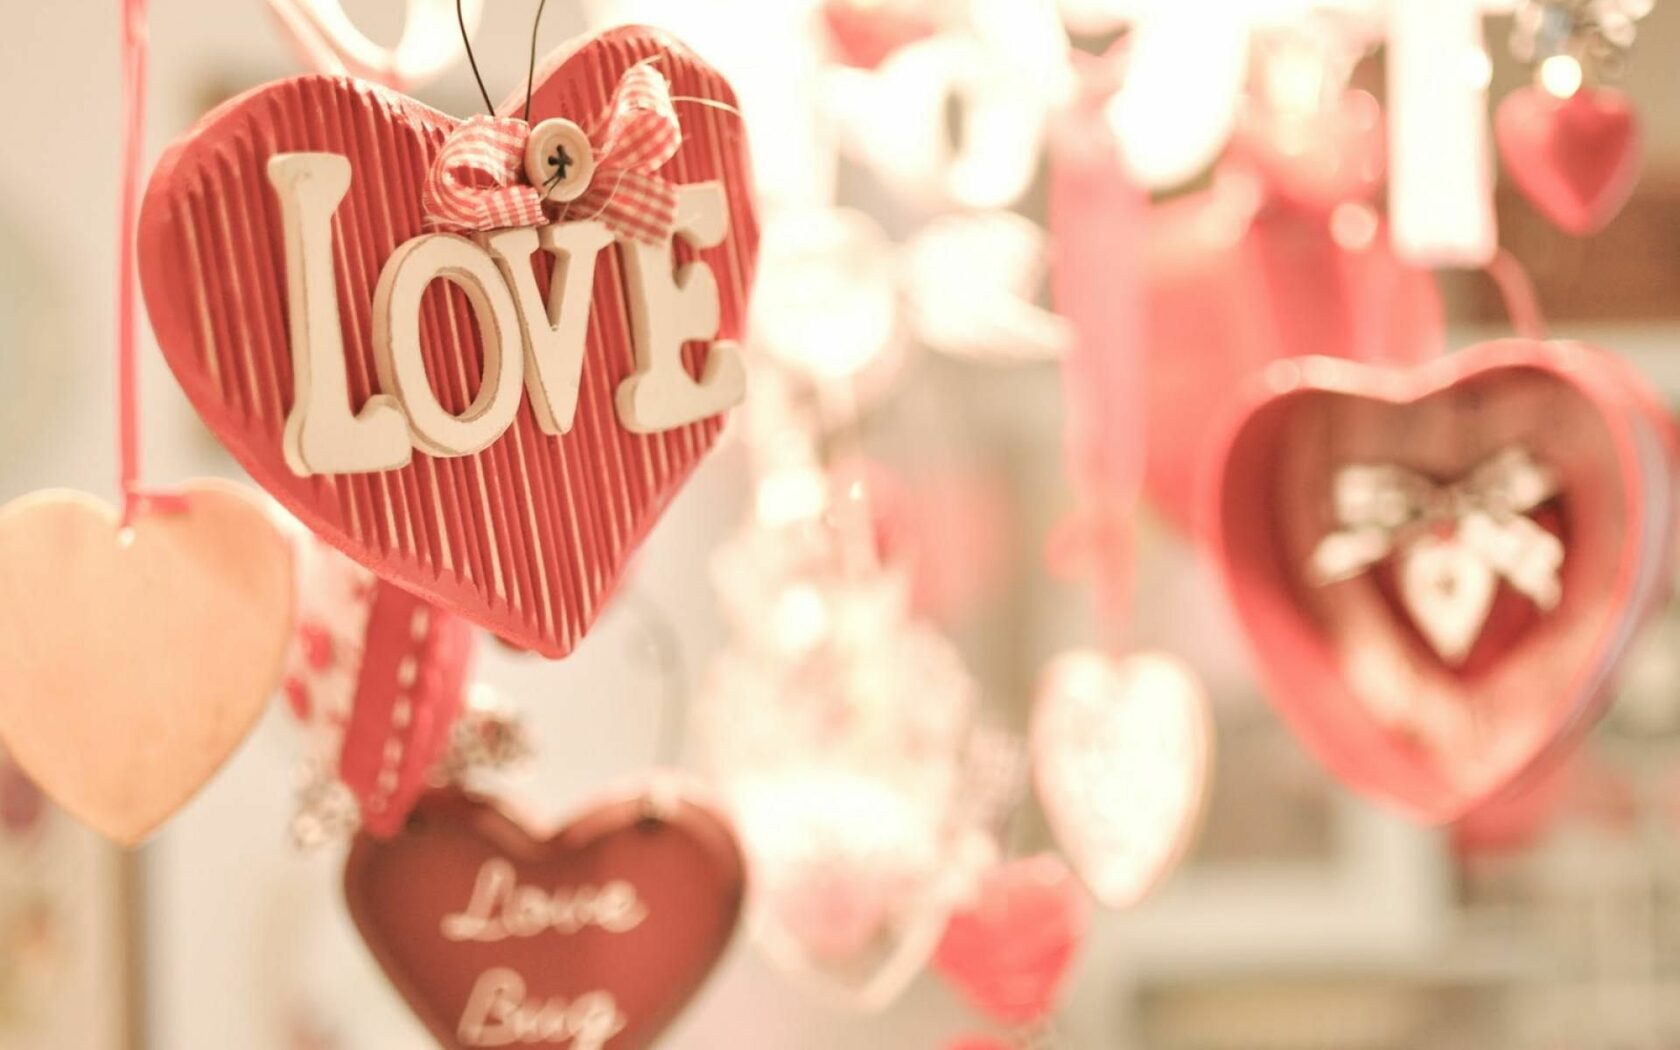 Love valentine s. С днем влюбленных. 14 Февраля день влюбленных. Подарки на день влюбленных.